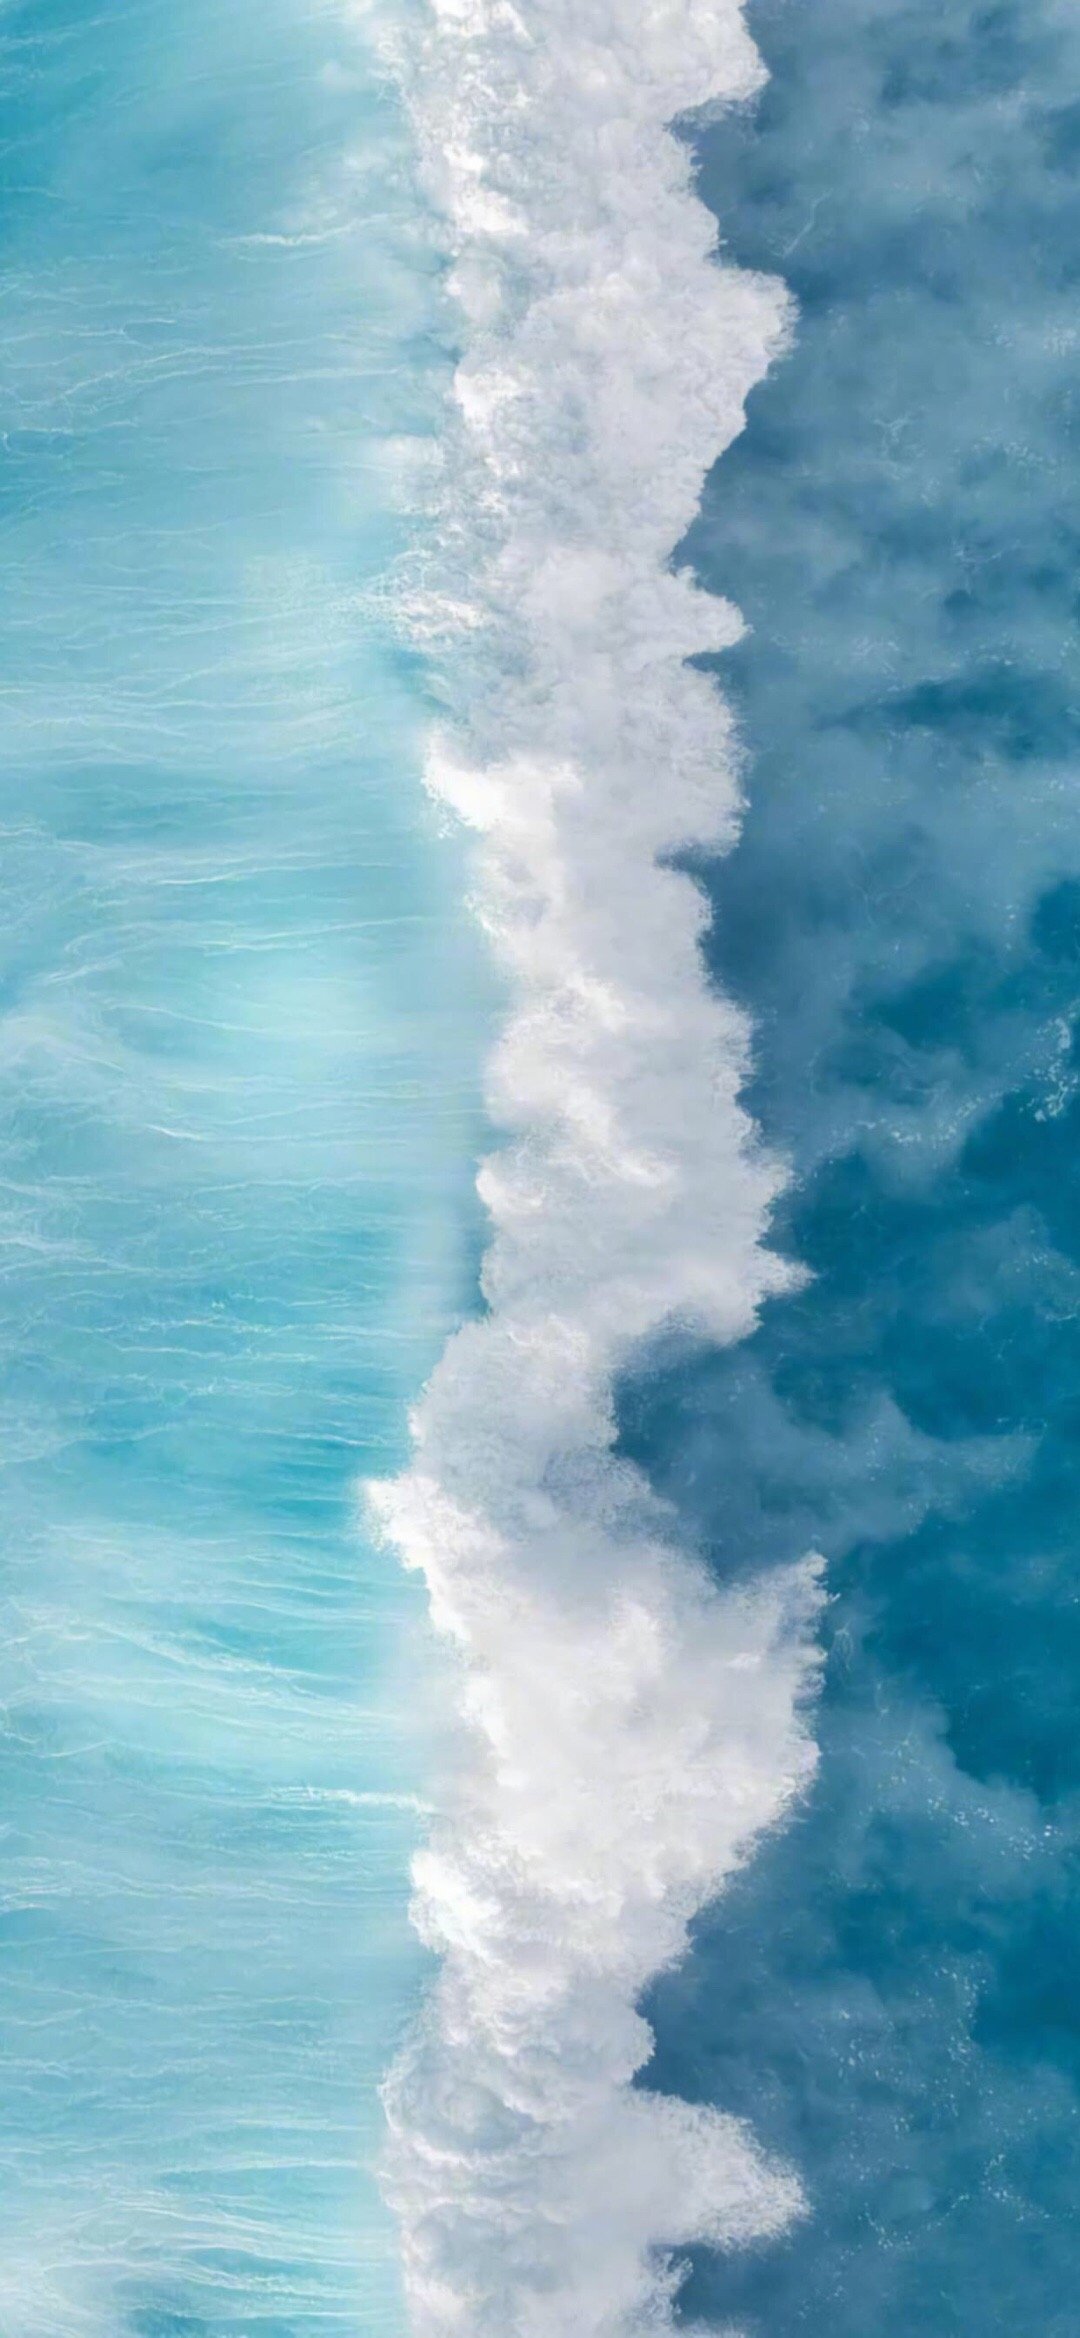 apk小游戏蔚蓝海洋风光高清手机壁纸安卓手机壁纸高清截图5